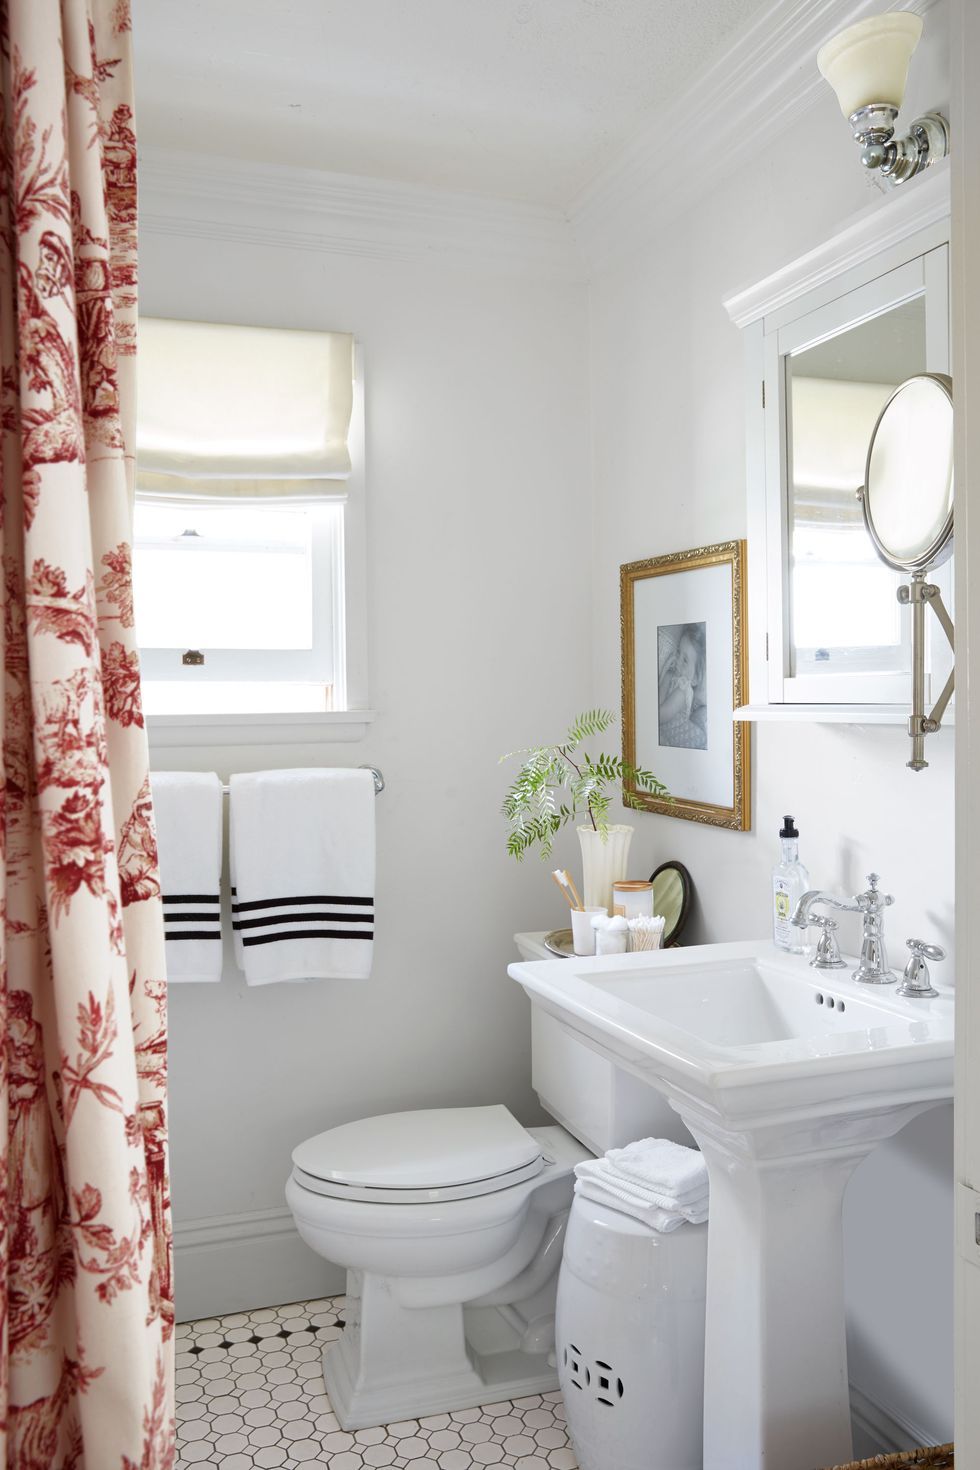 Mirror Medicine Cabinet: Amazing Ideas For Your Bathroom